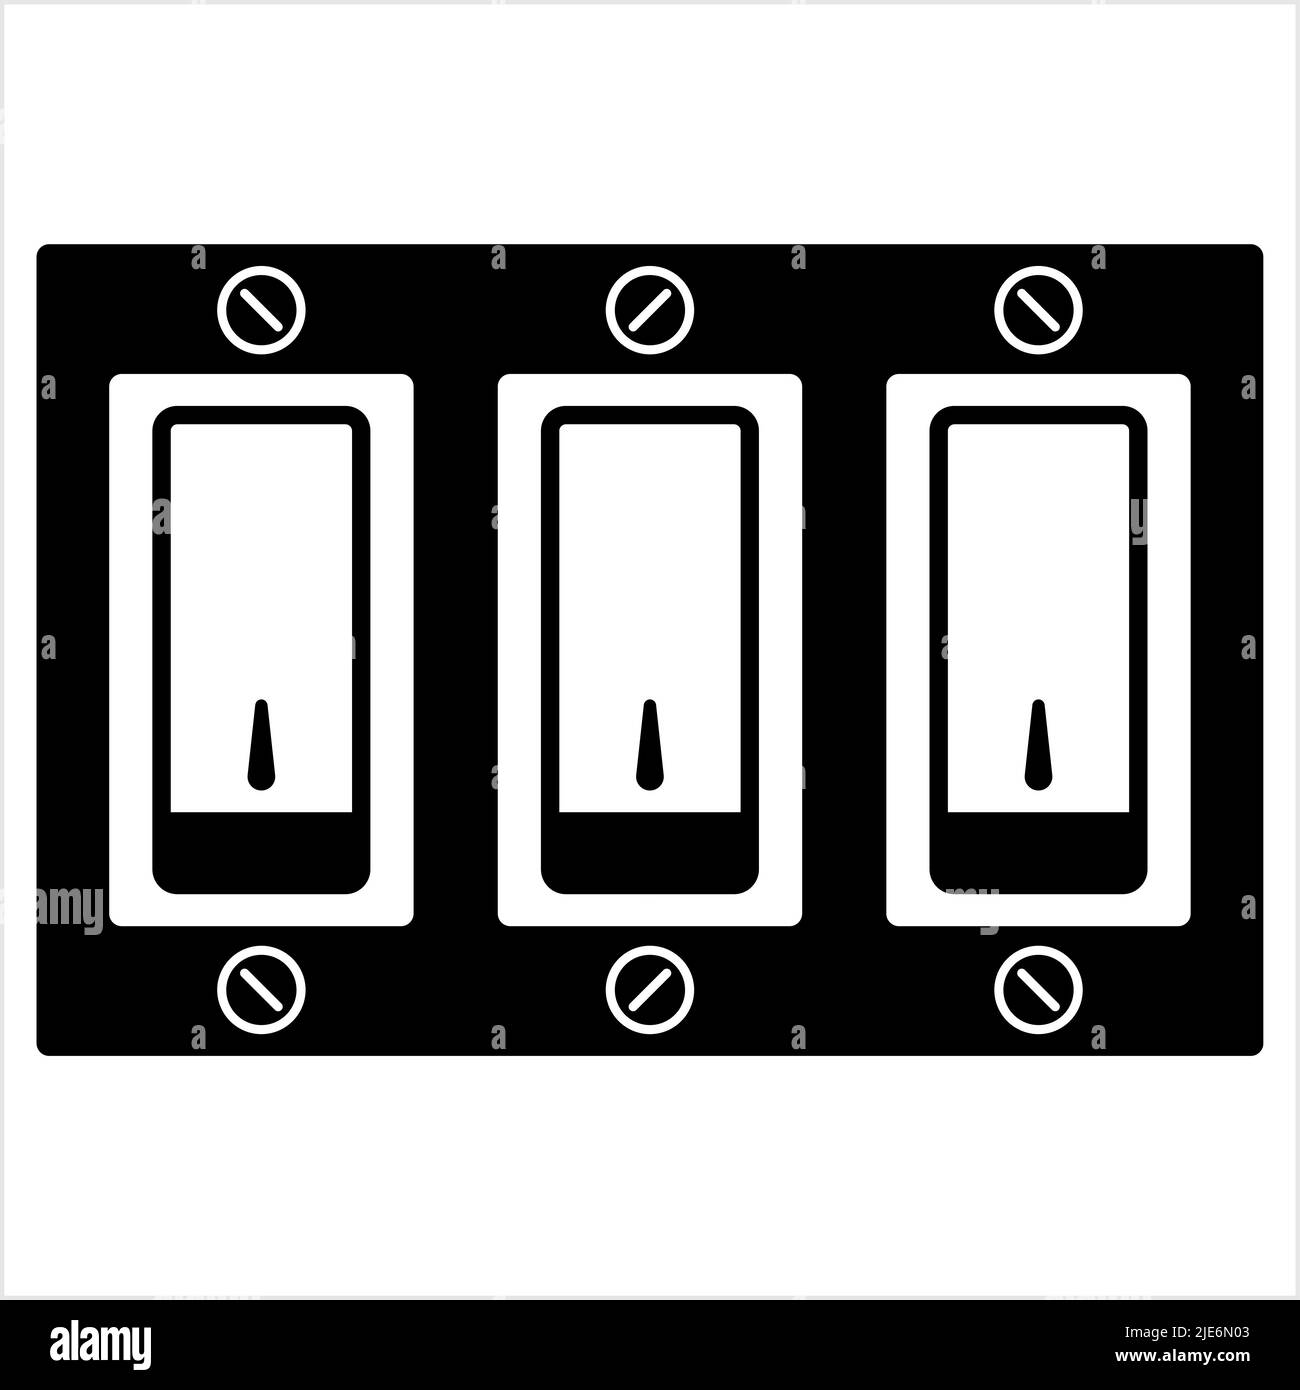 Pictogramme interrupteur lumière Banque d'images noir et blanc - Page 2 -  Alamy